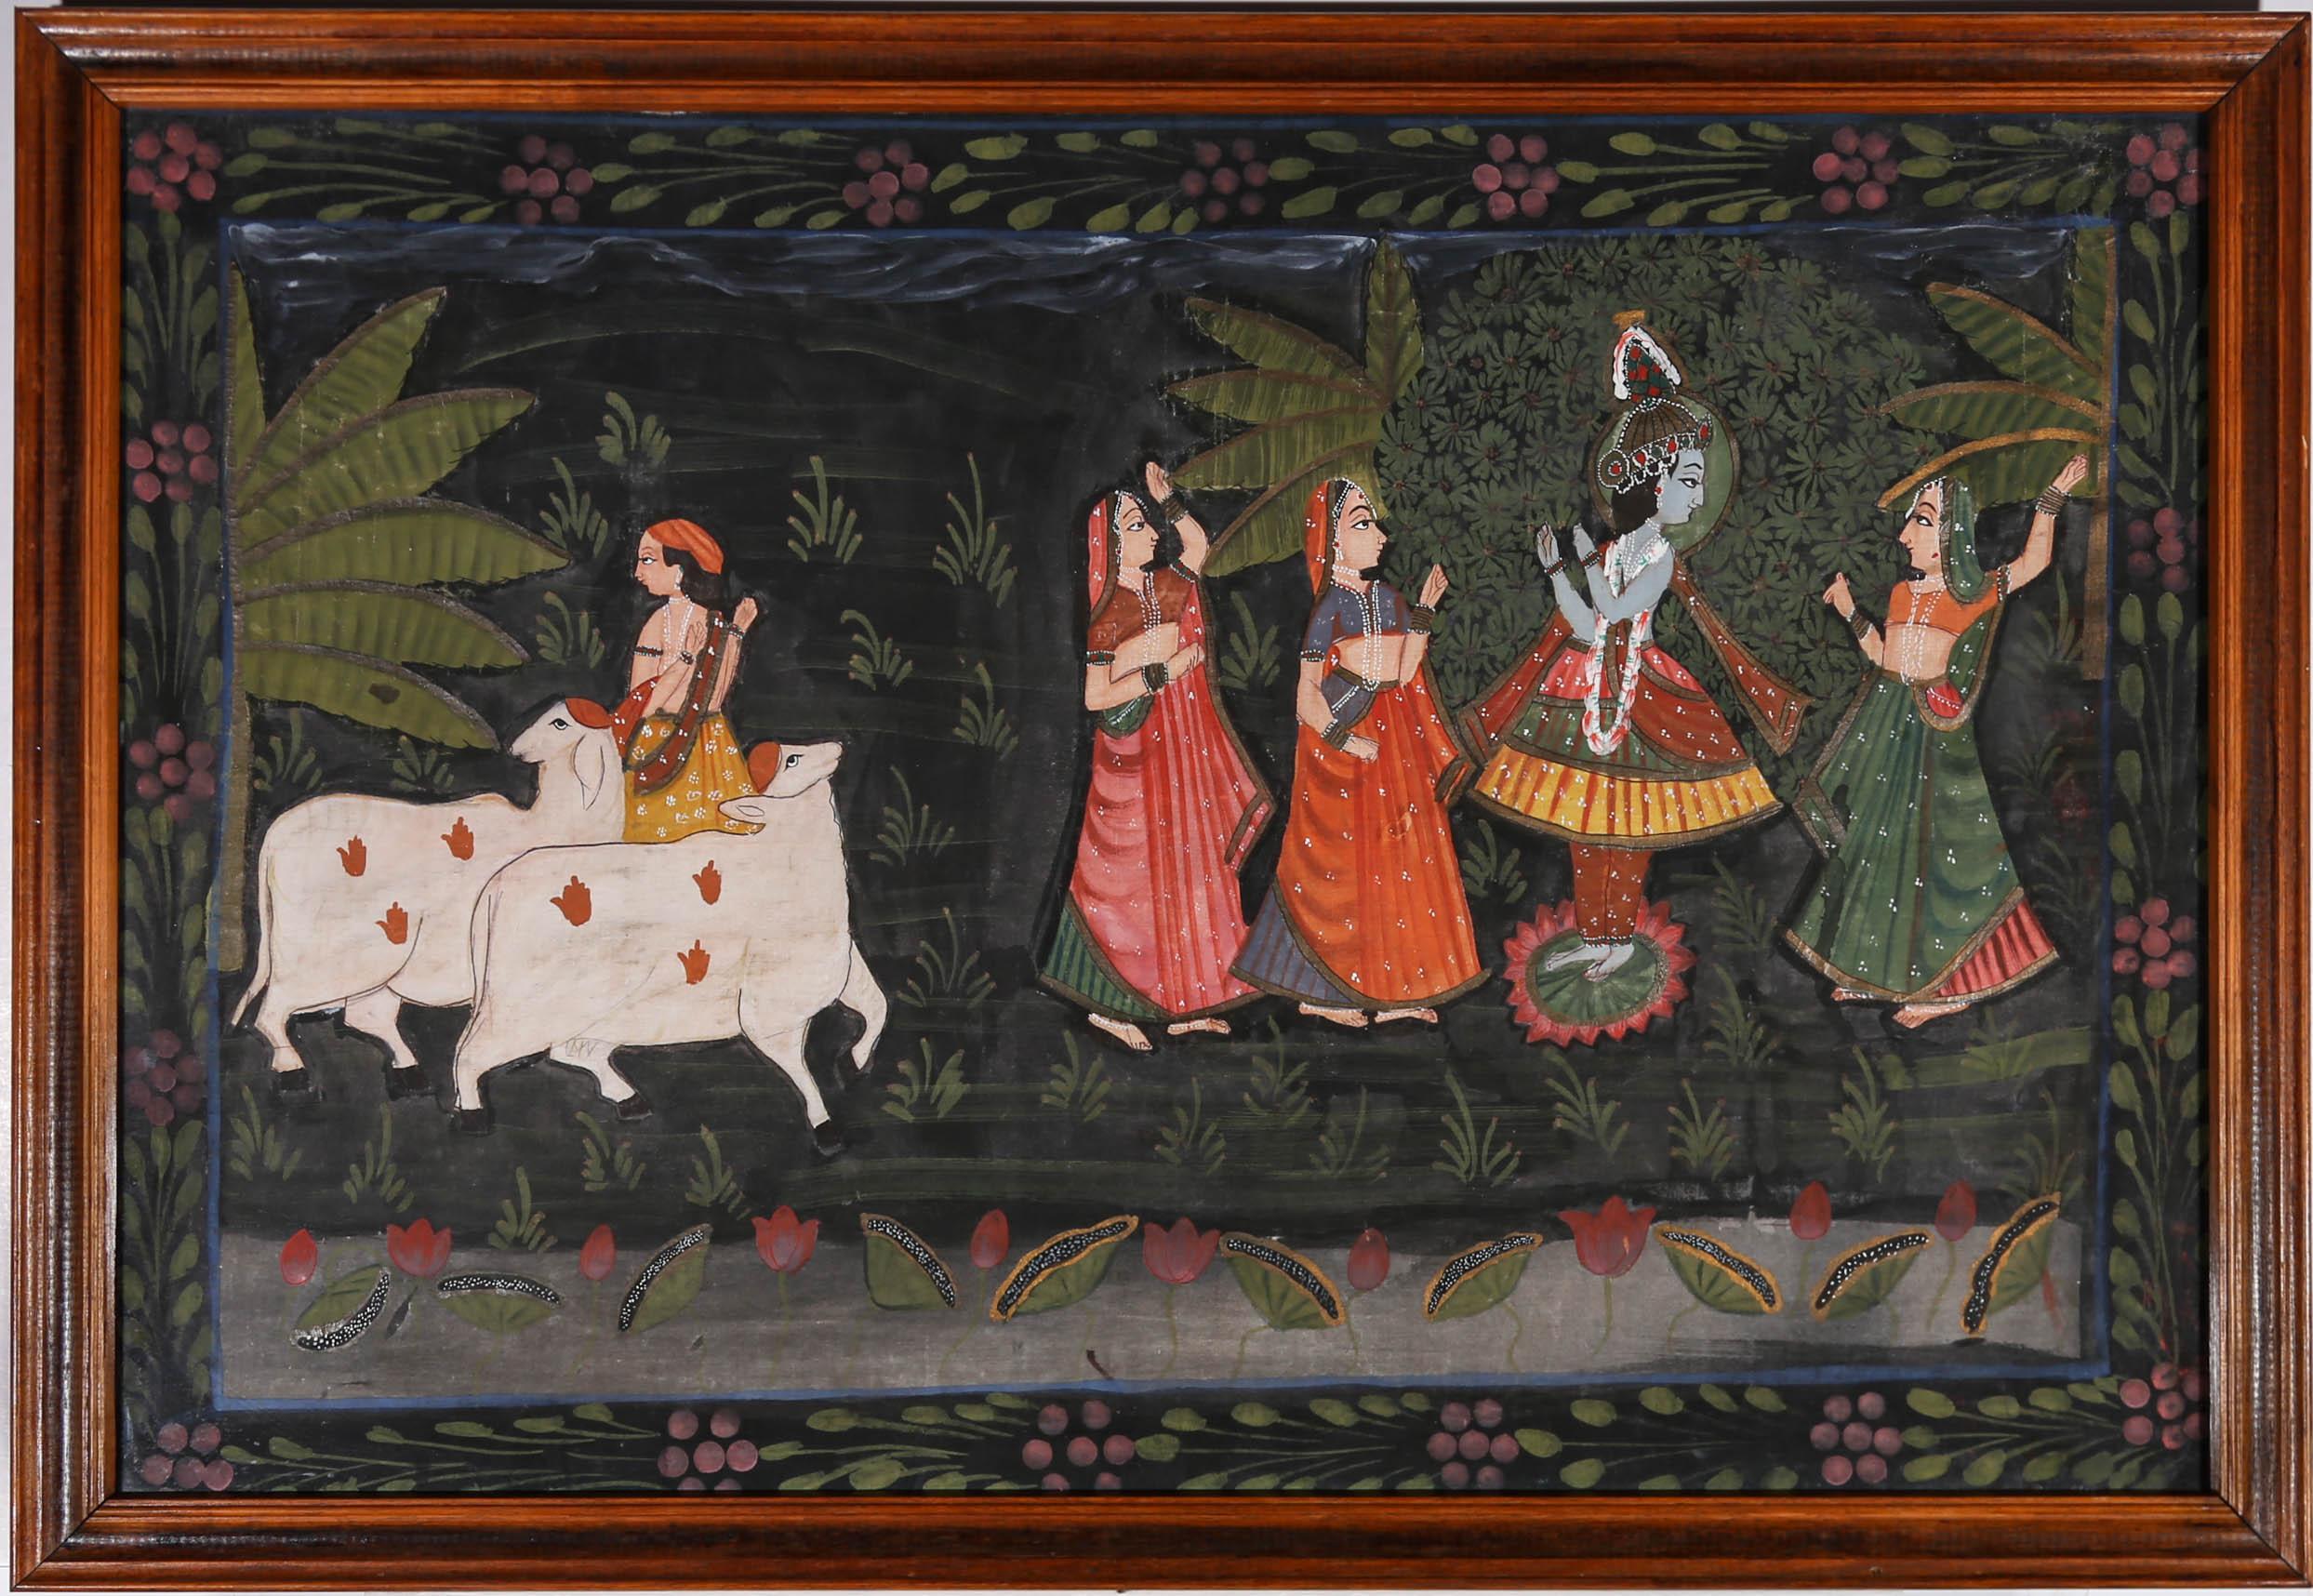 Eine dekorative und detaillierte indische Aquarell- und Gouache-Szene, die die Gopis von Vrindavan im Tanz mit dem Herrn Krishna darstellt. Die verführten Frauen sind umgeben von botanischen Bäumen und zwei heiligen Ziegen zu sehen. Alles zart